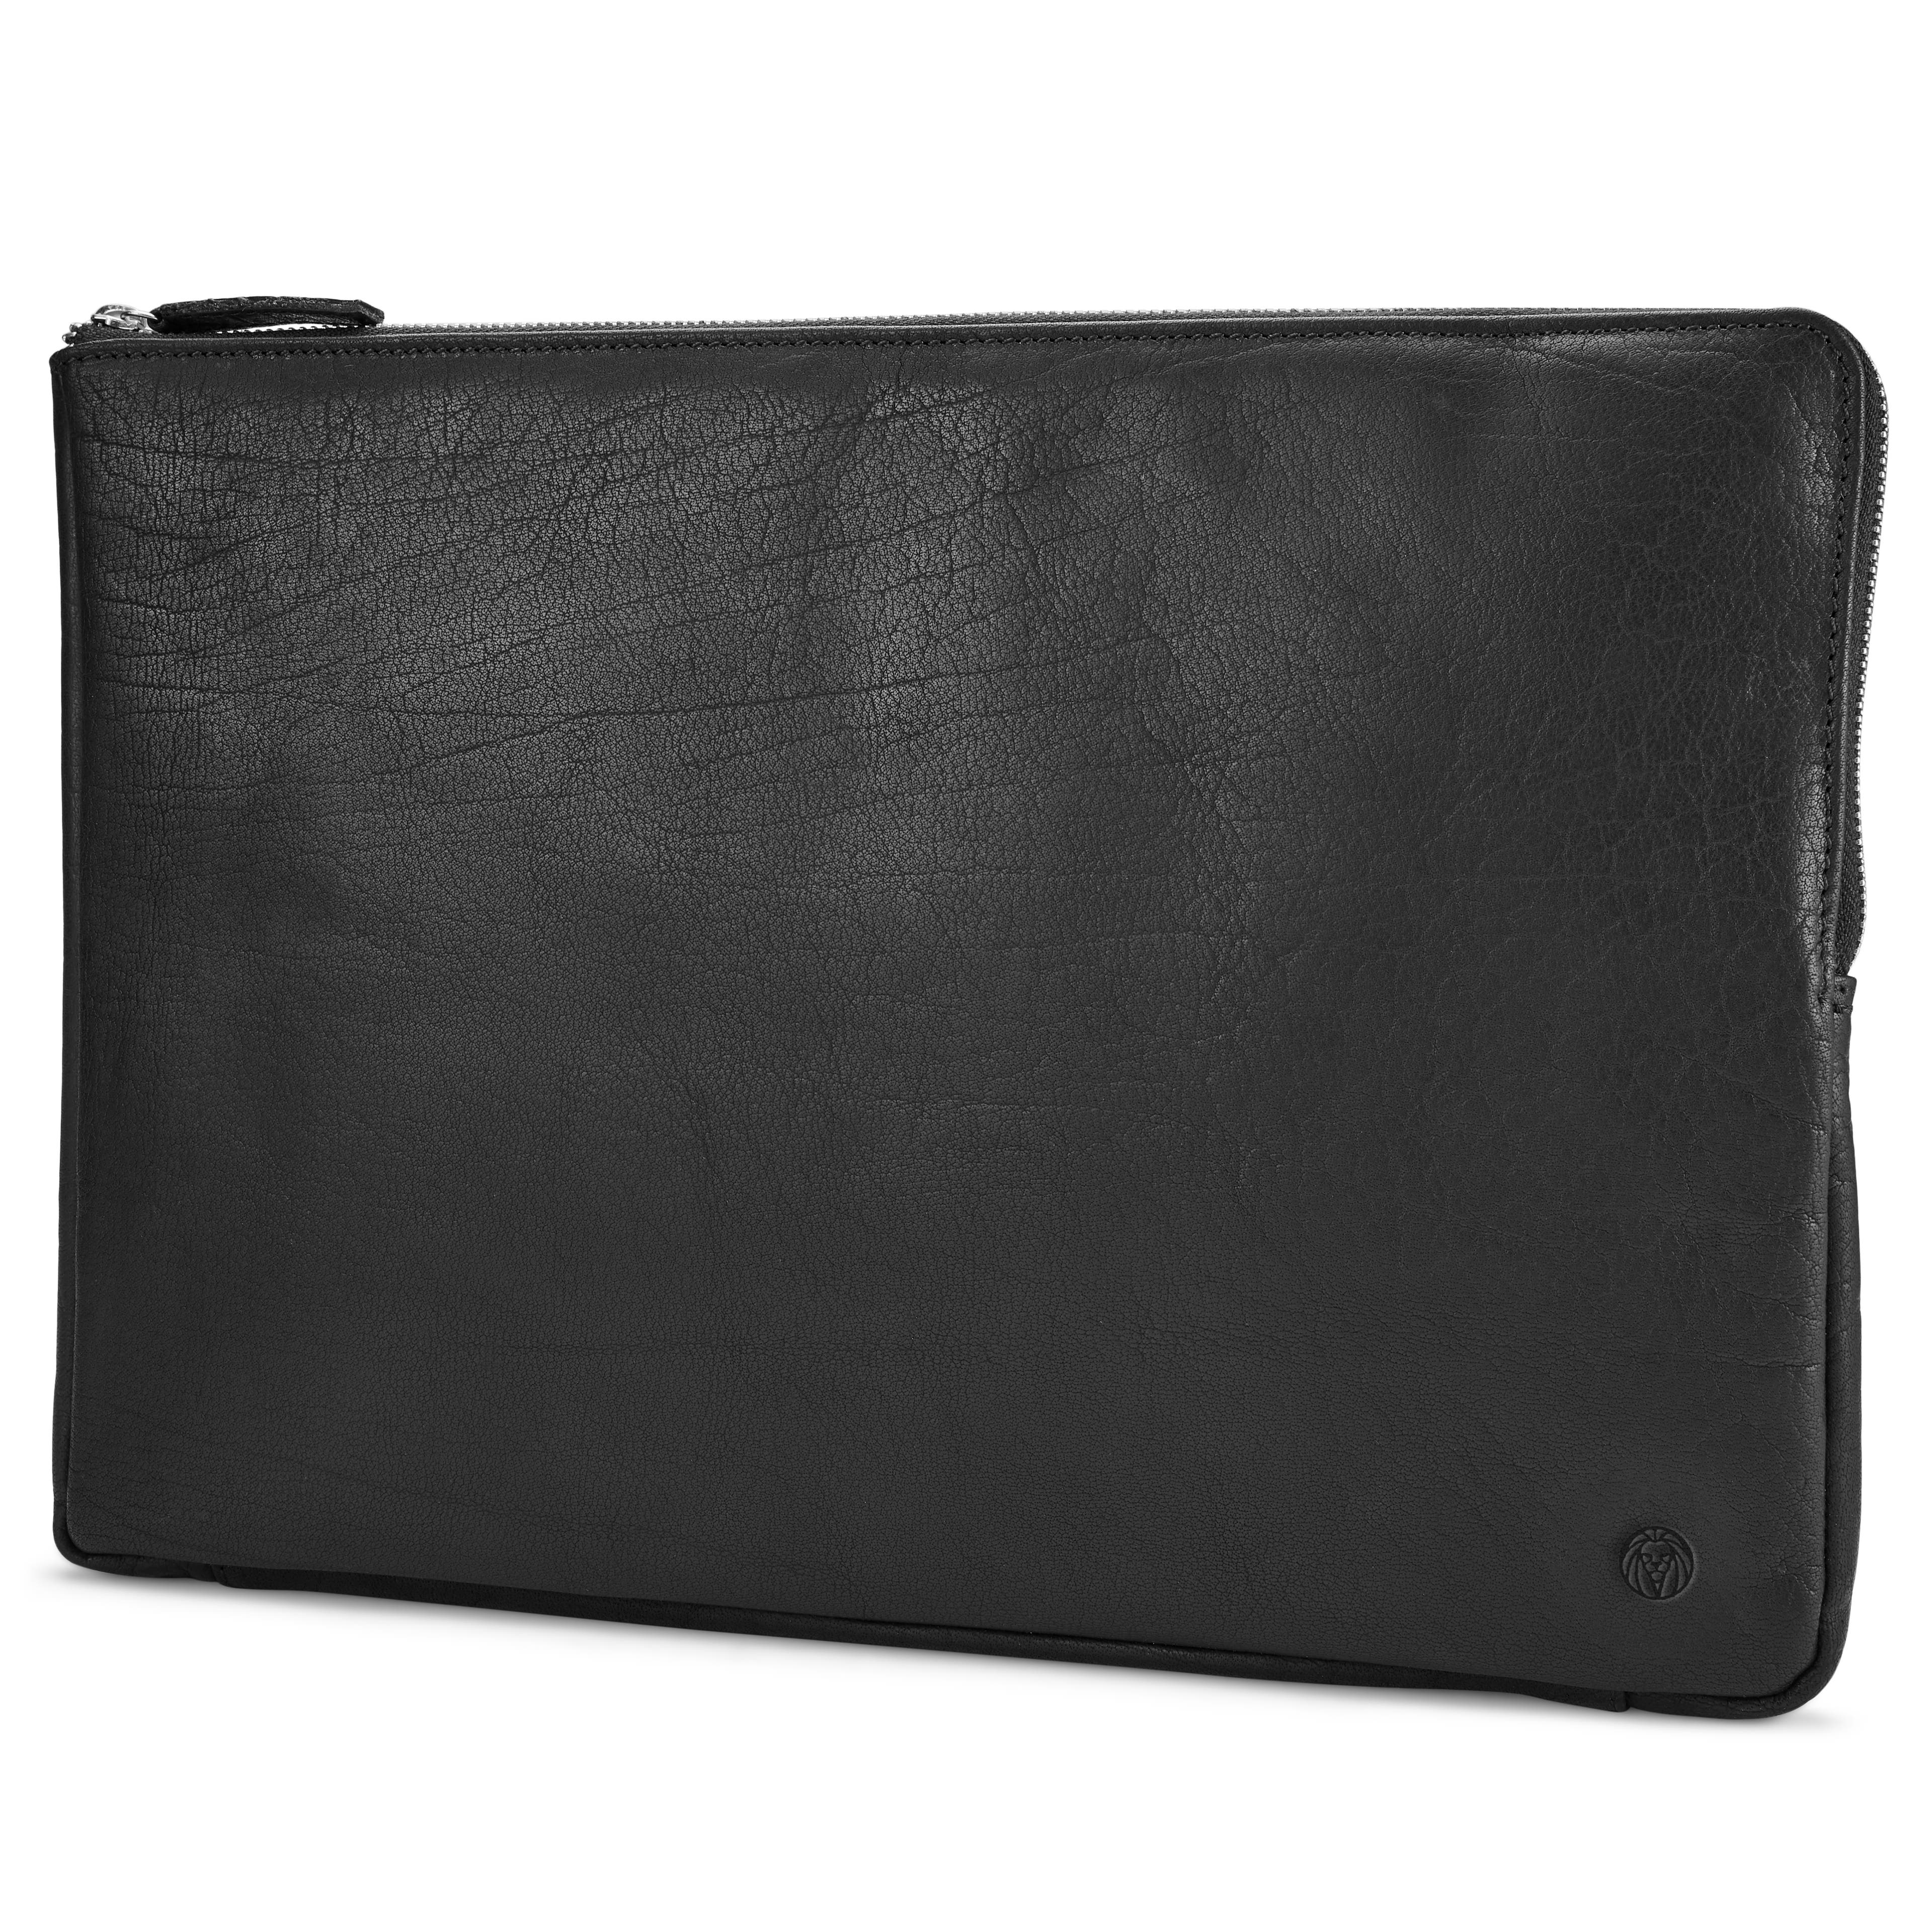 Husă Montreal din piele neagră pentru laptop de dimensiuni reduse